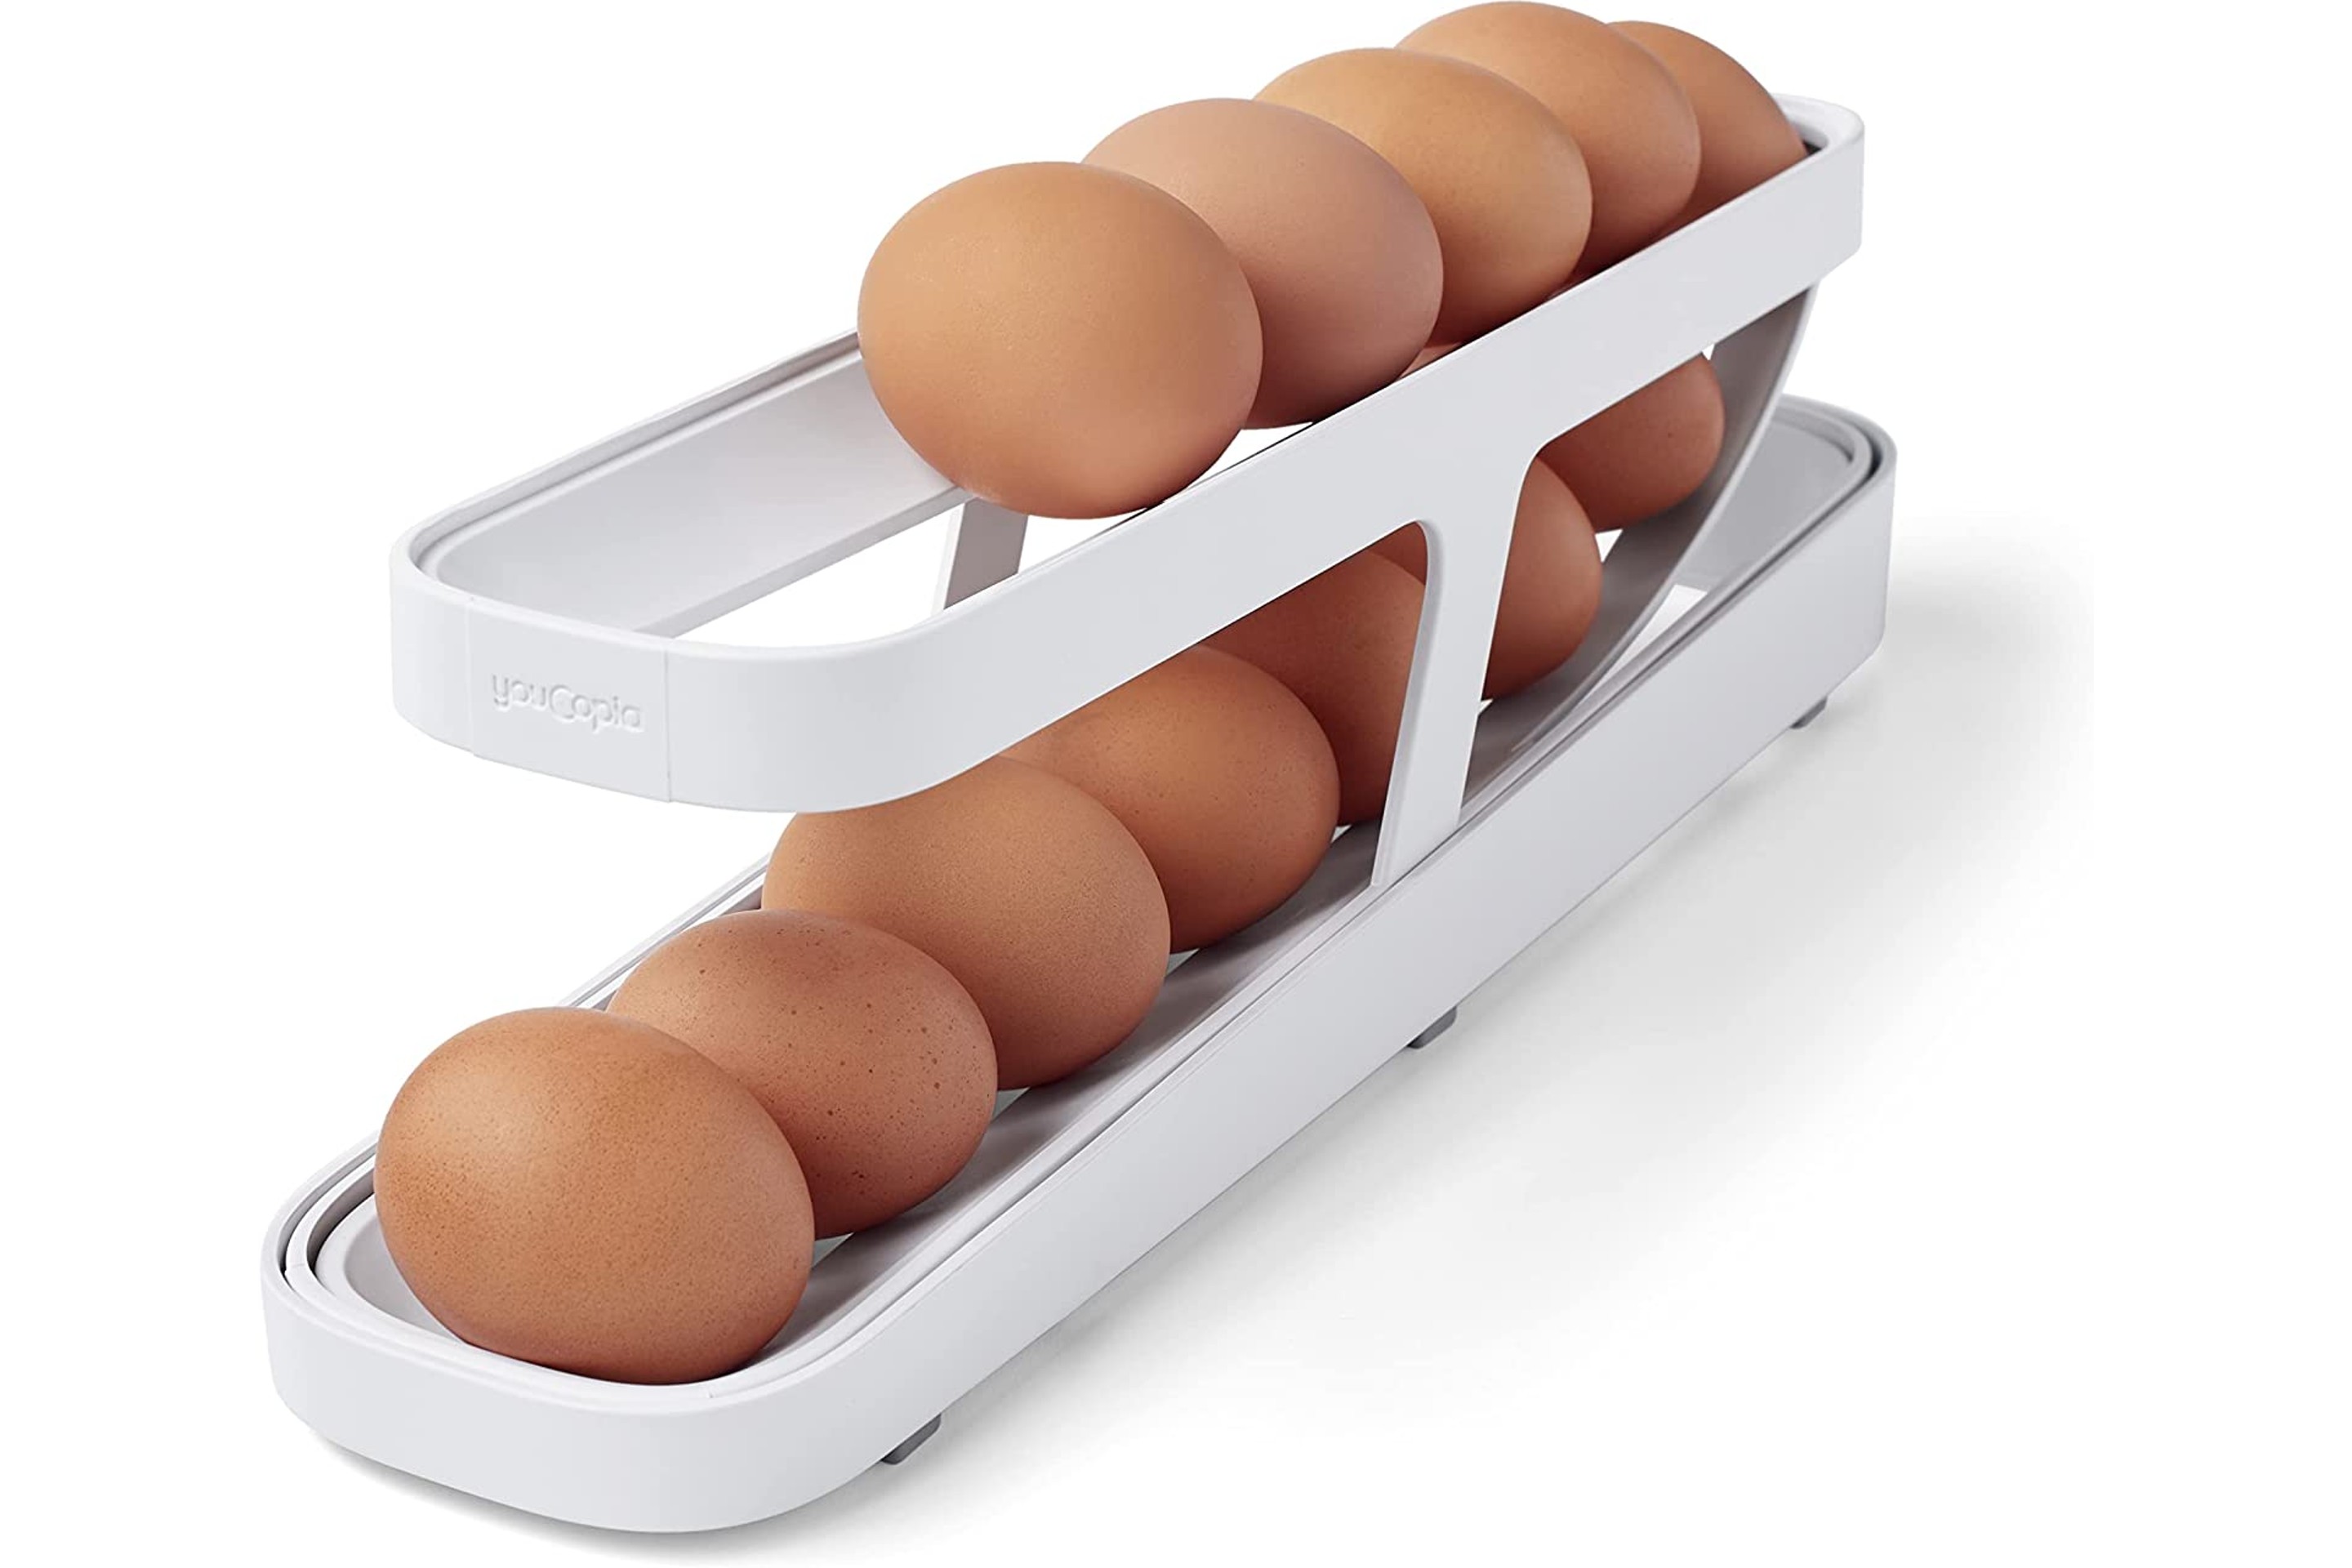 Roll-down refrigerator egg holder & dispenser